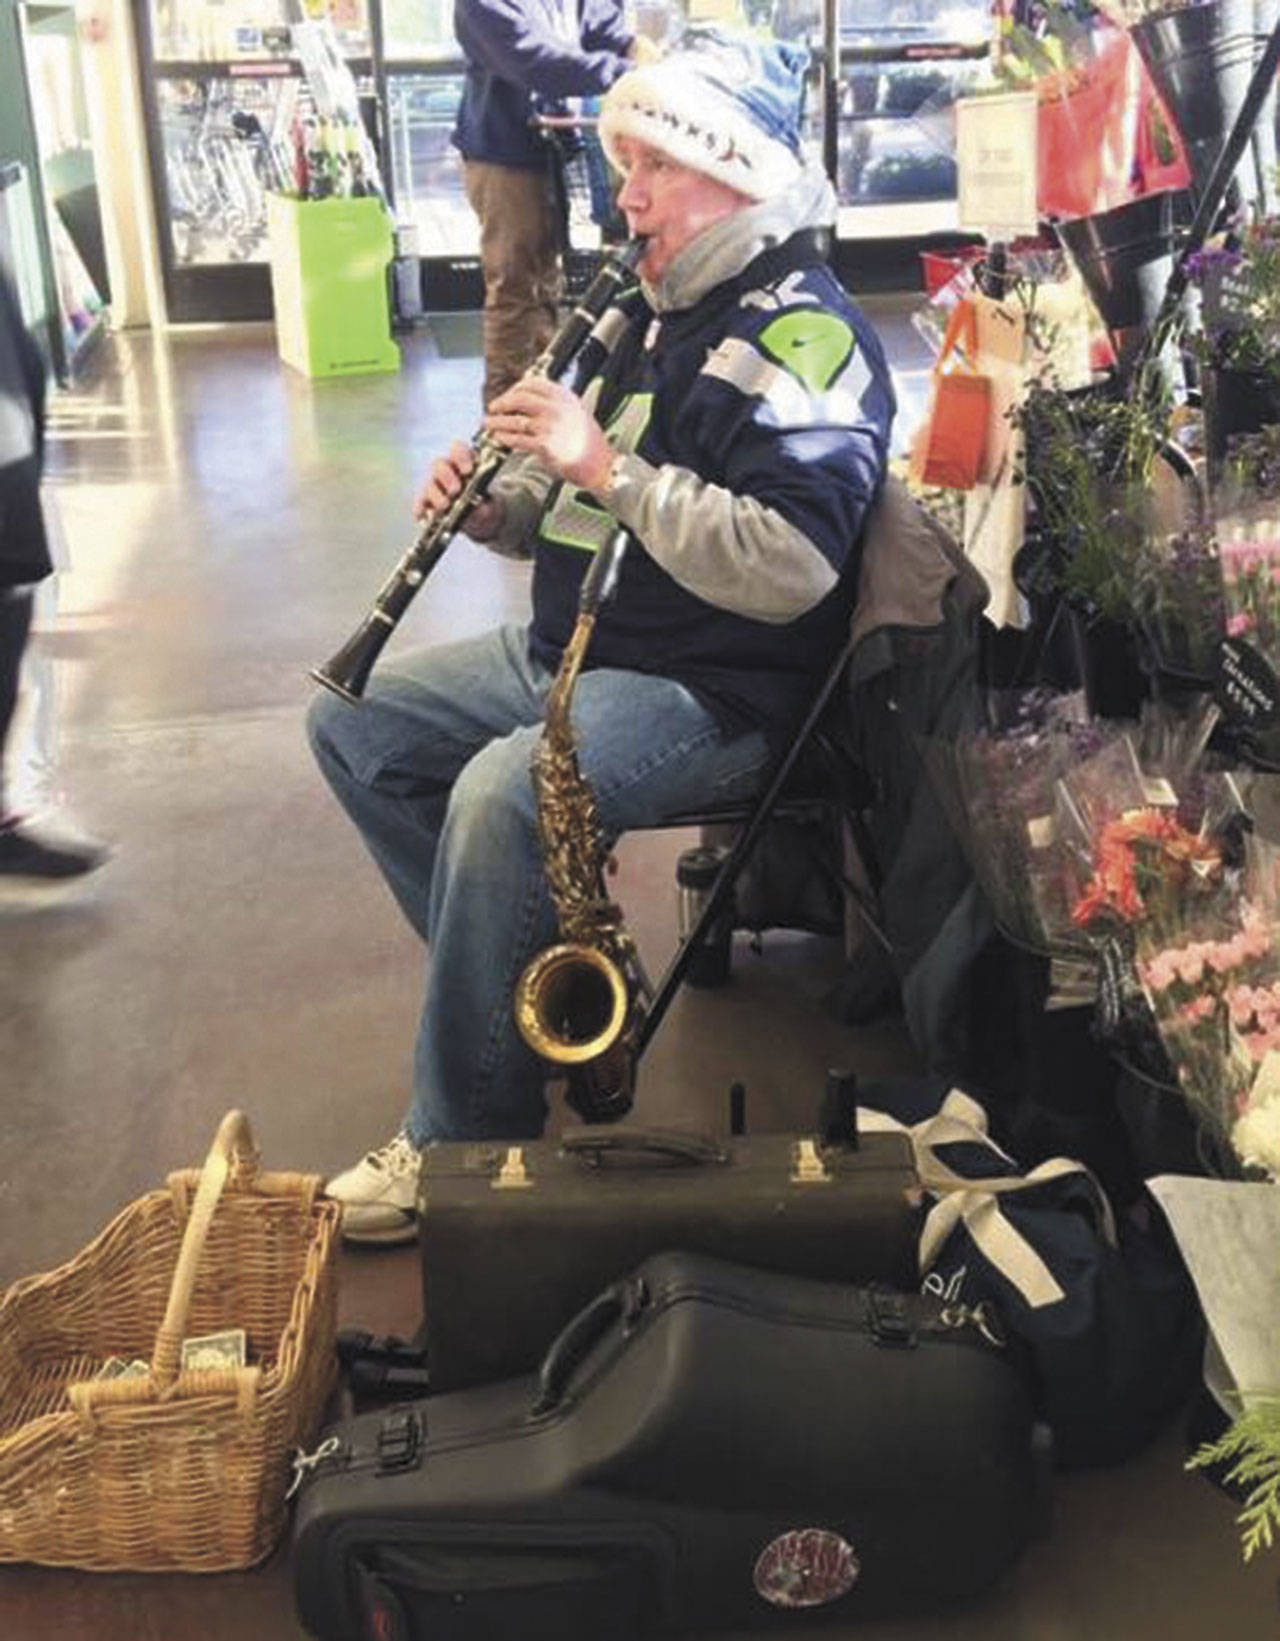 Charlie Kipp playing holiday music at Thriftway. (Courtesy photo)